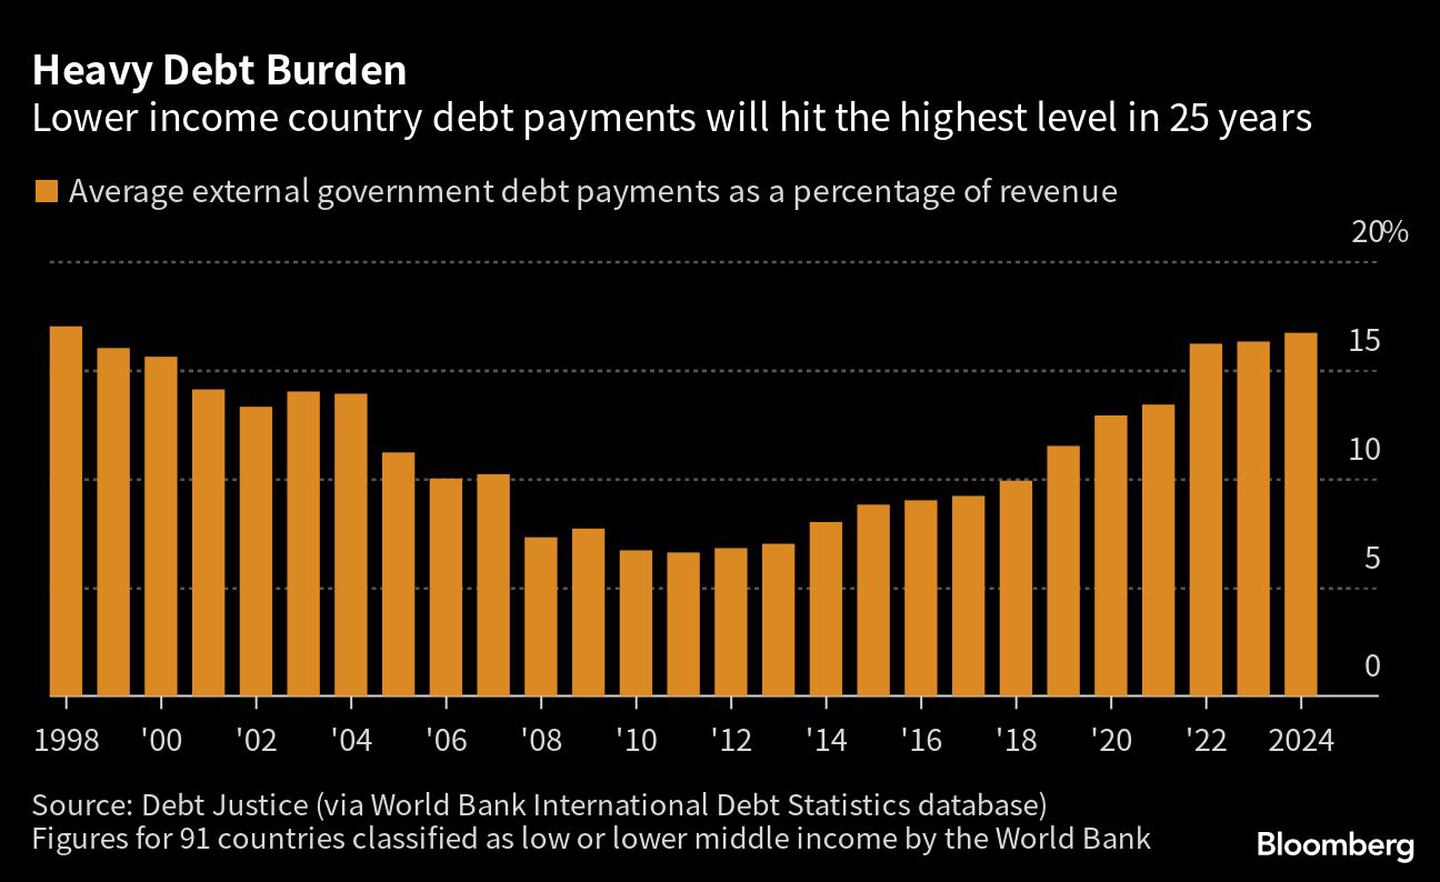 Los pagos de la deuda de los países de renta baja alcanzarán el nivel más alto en 25 añosdfd